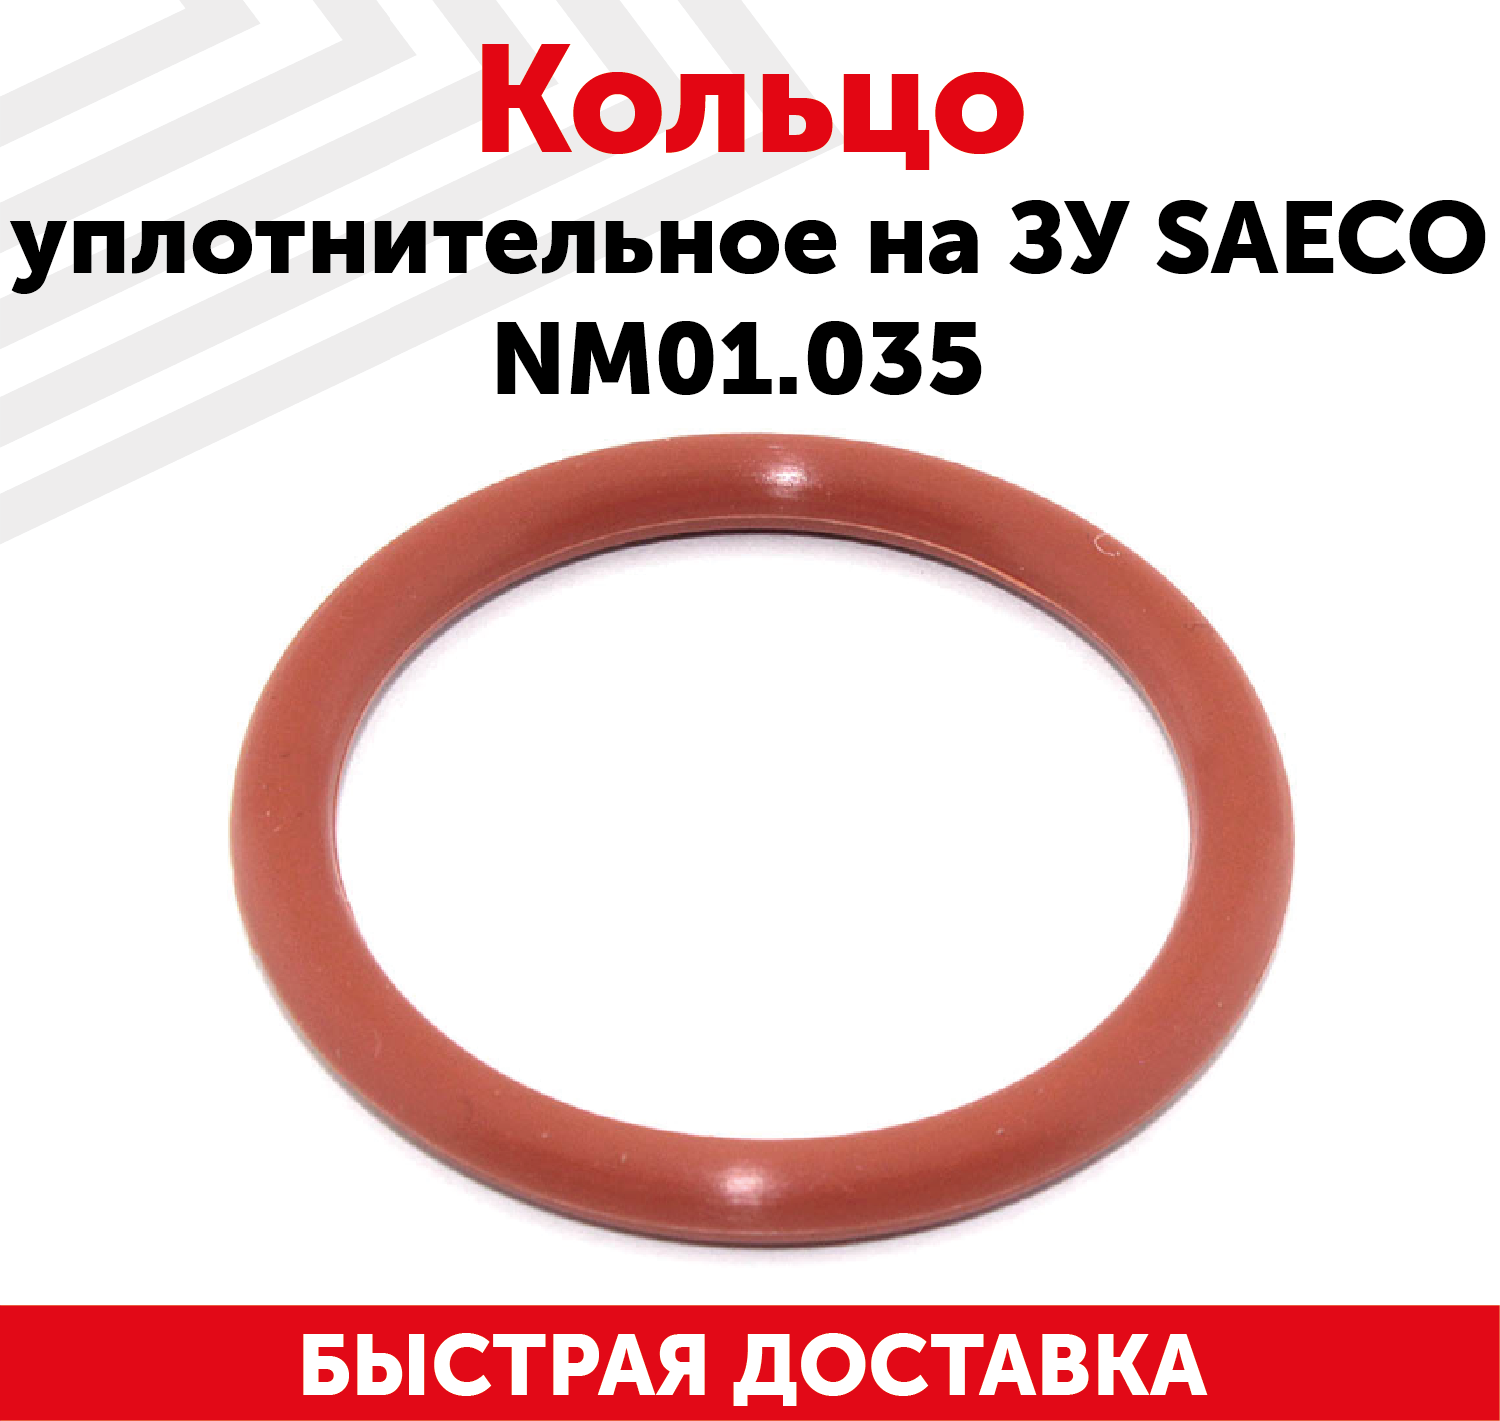 Кольцо уплотнительное на заварочное устройсво Saeco NM01.035